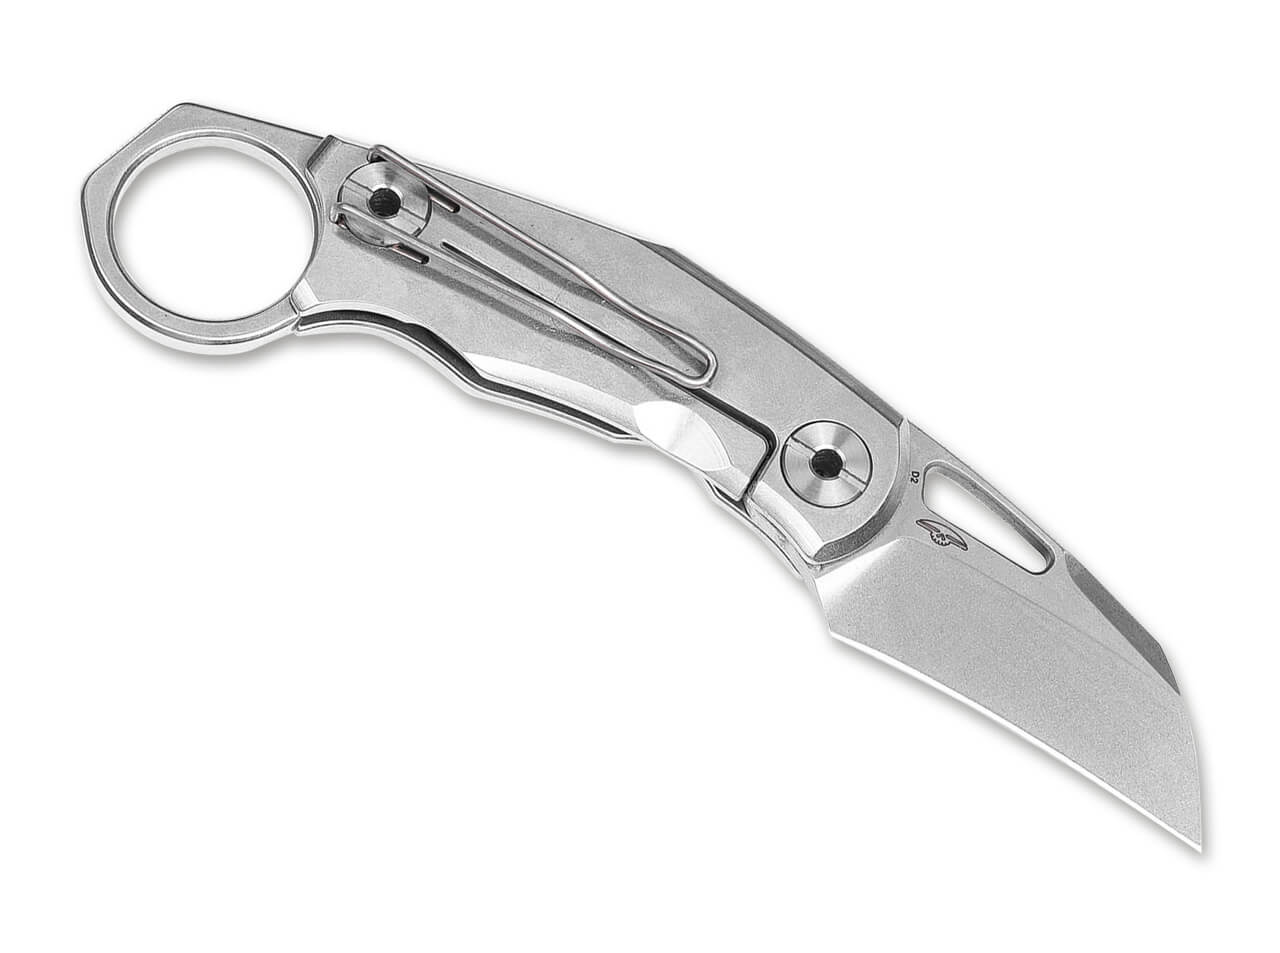 Real Steel Shade Hawkbill Knife Satin + G-10